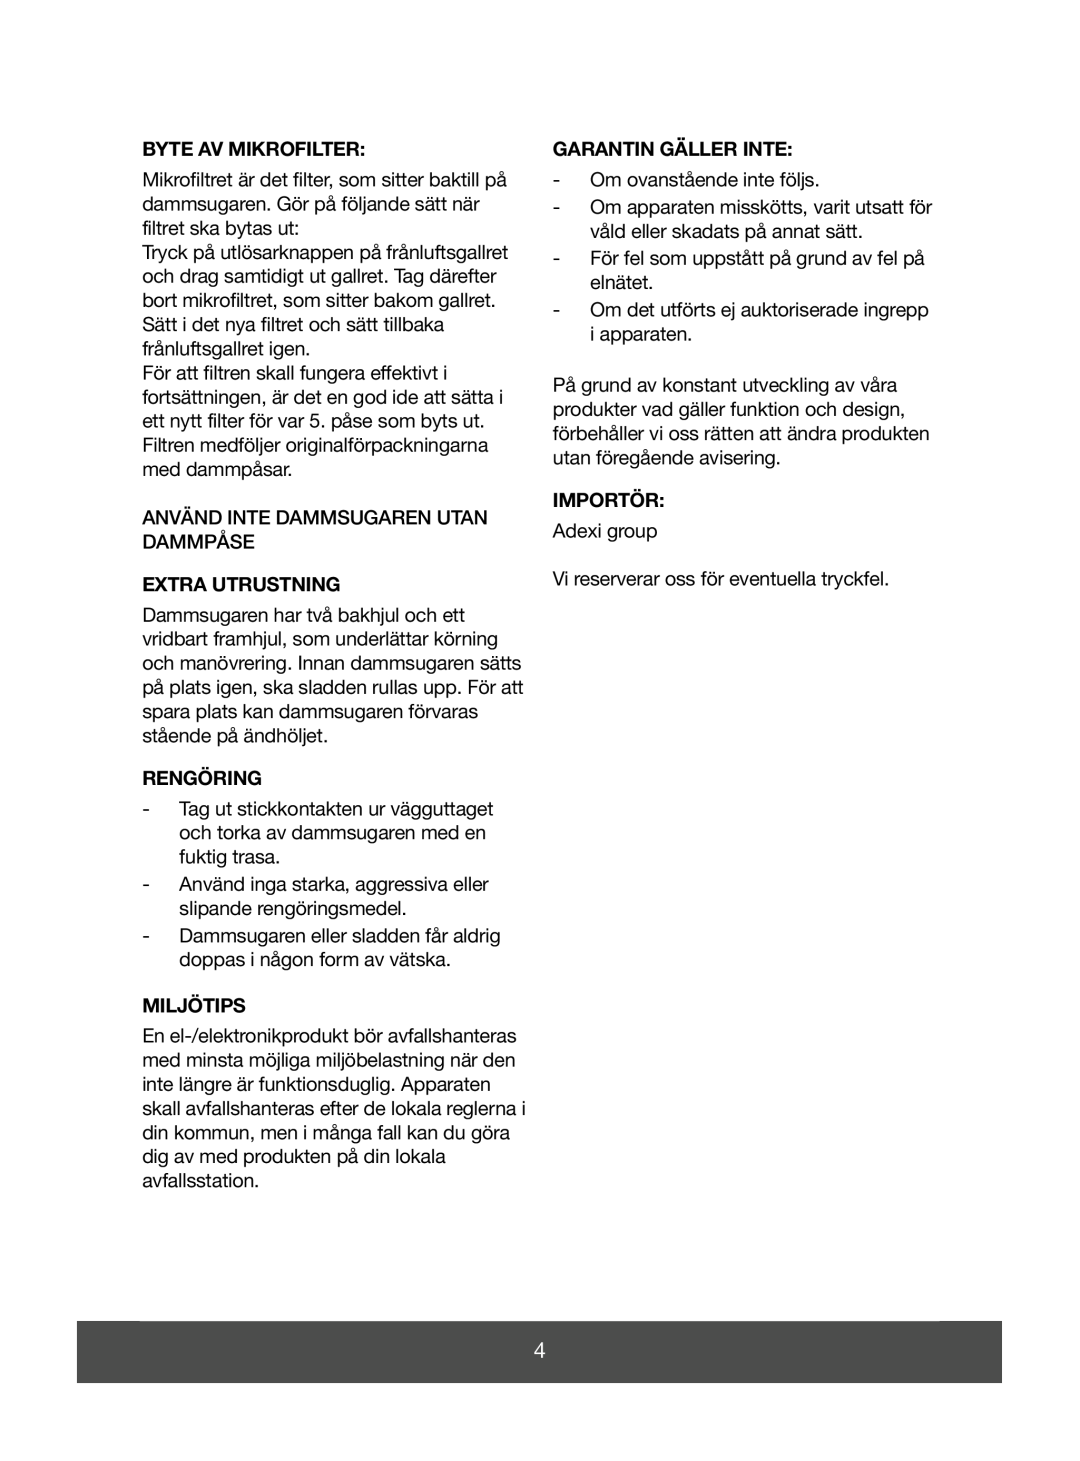 Melissa 640-043 manual Byte Av Mikrofilter, Extra Utrustning, Rengöring, Miljötips, Garantin Gäller Inte, Importör 